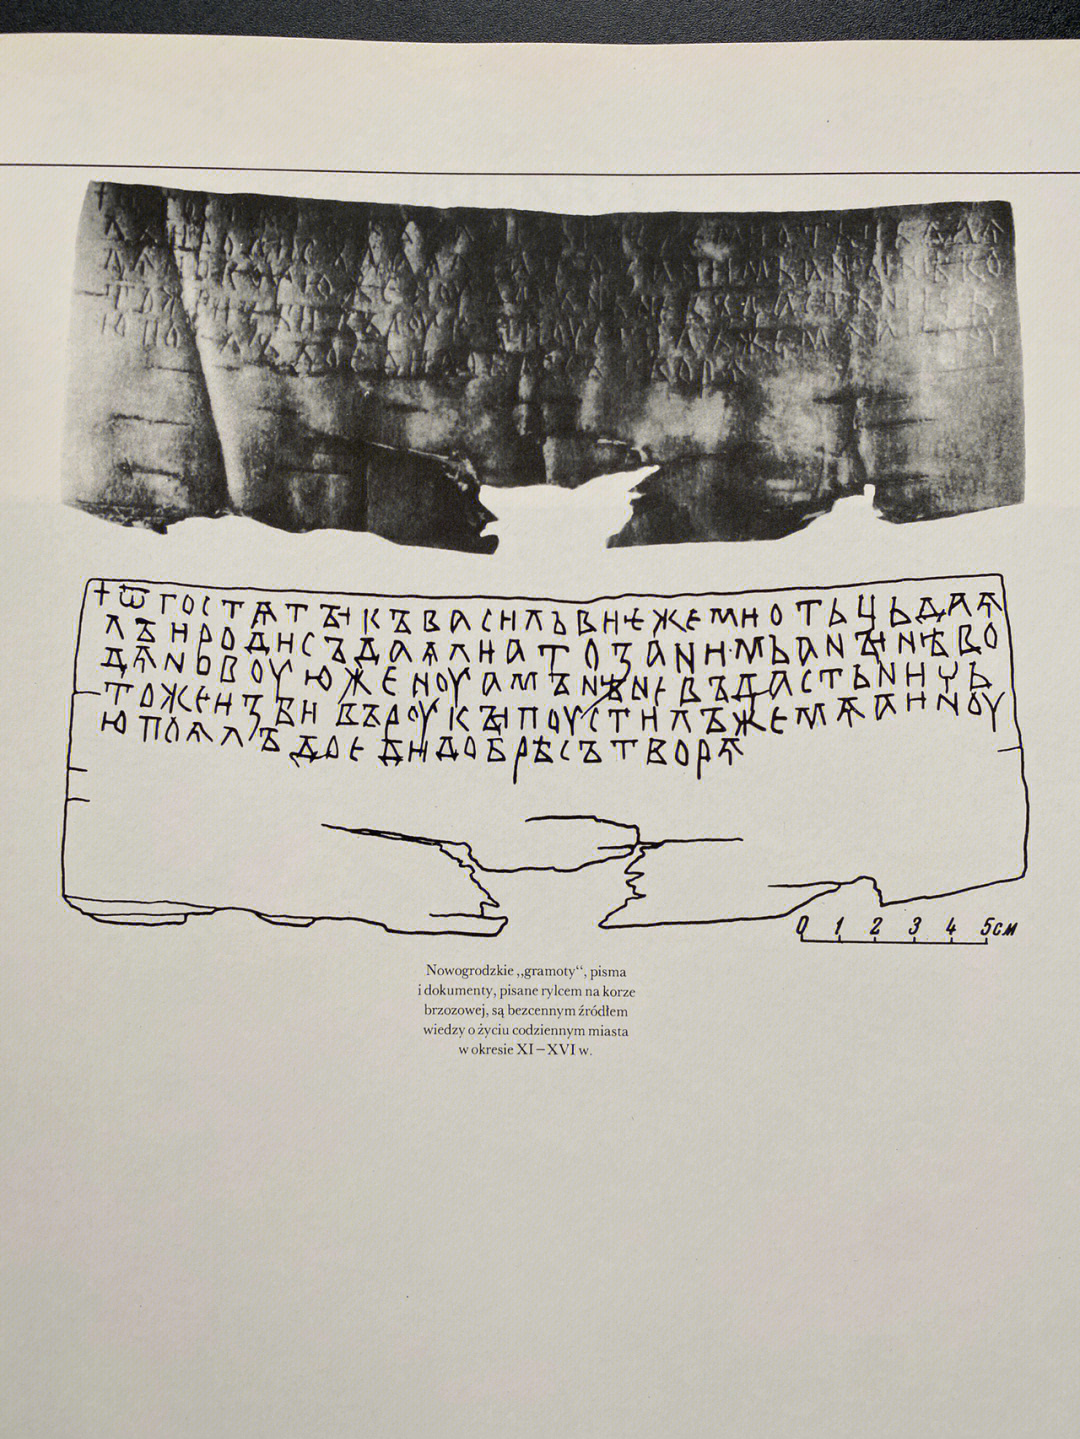 看看古代斯拉夫人信件和文件,用手写笔在桦树皮上书写,是了解 11 至